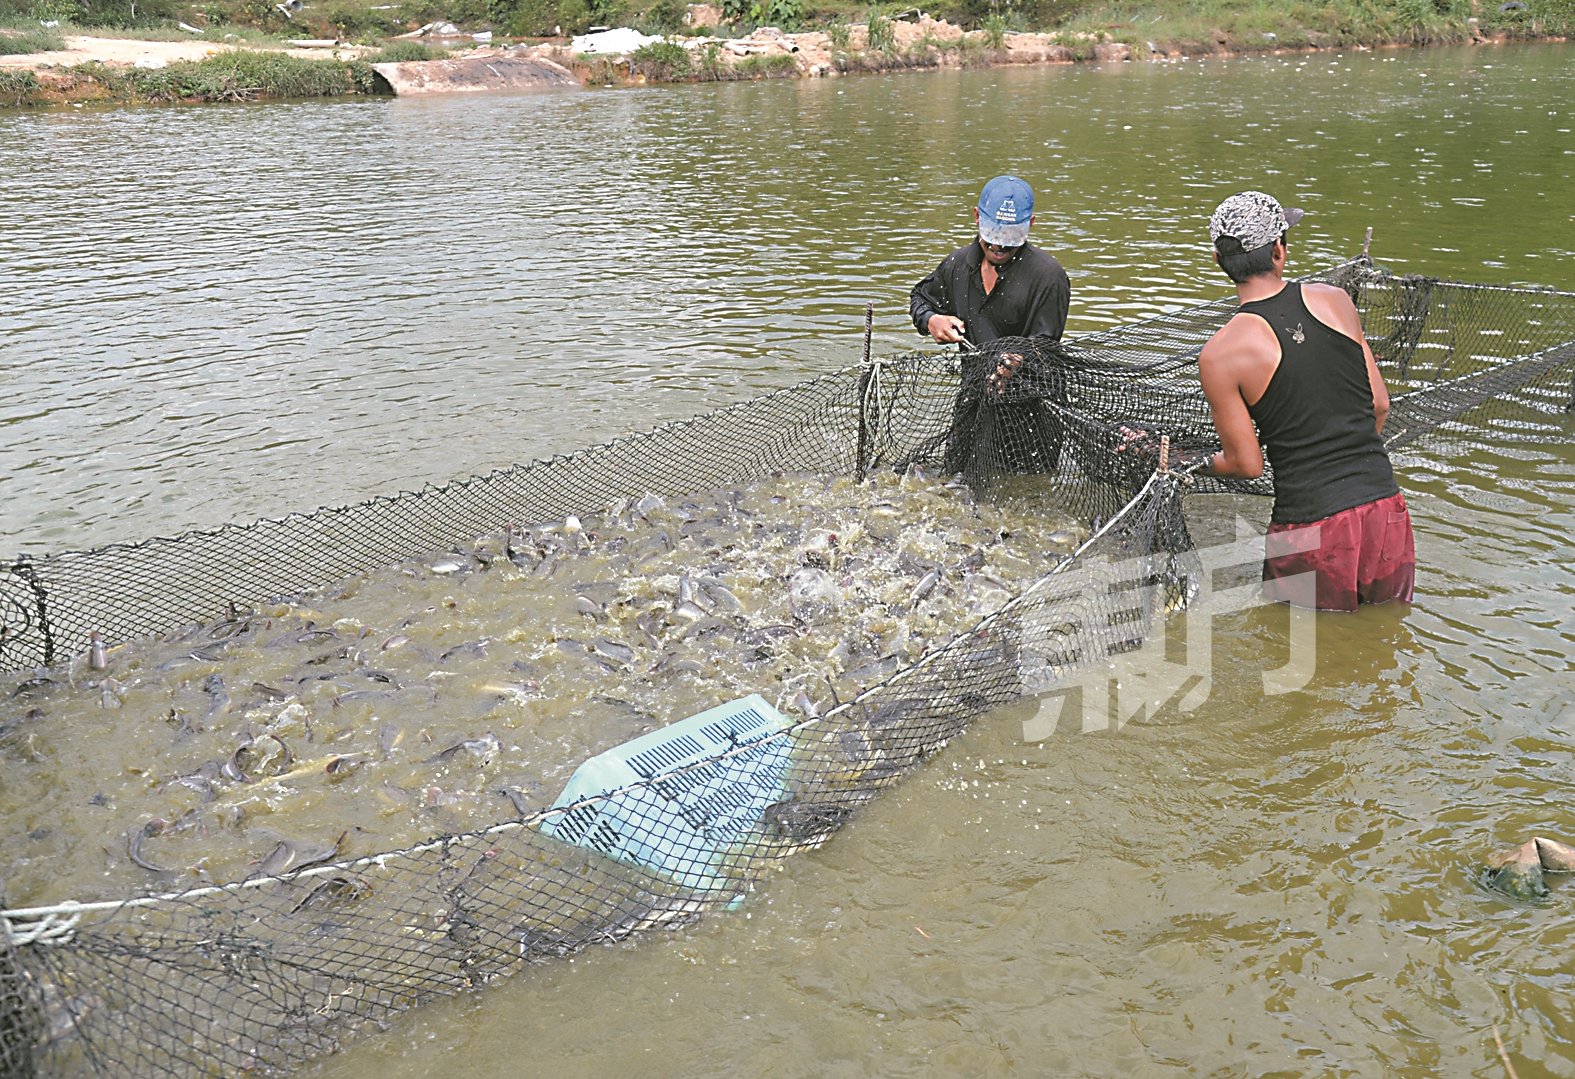 养殖场员工每天早上依据客户的需求（泥鳅体积大小），以围网方式挑出合适的泥鳅。